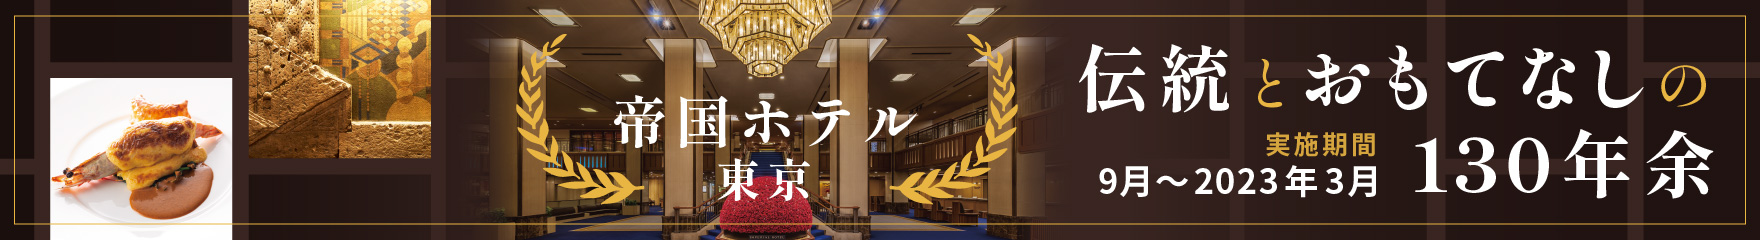 帝国ホテル 東京 伝統とおもてなしの130年余